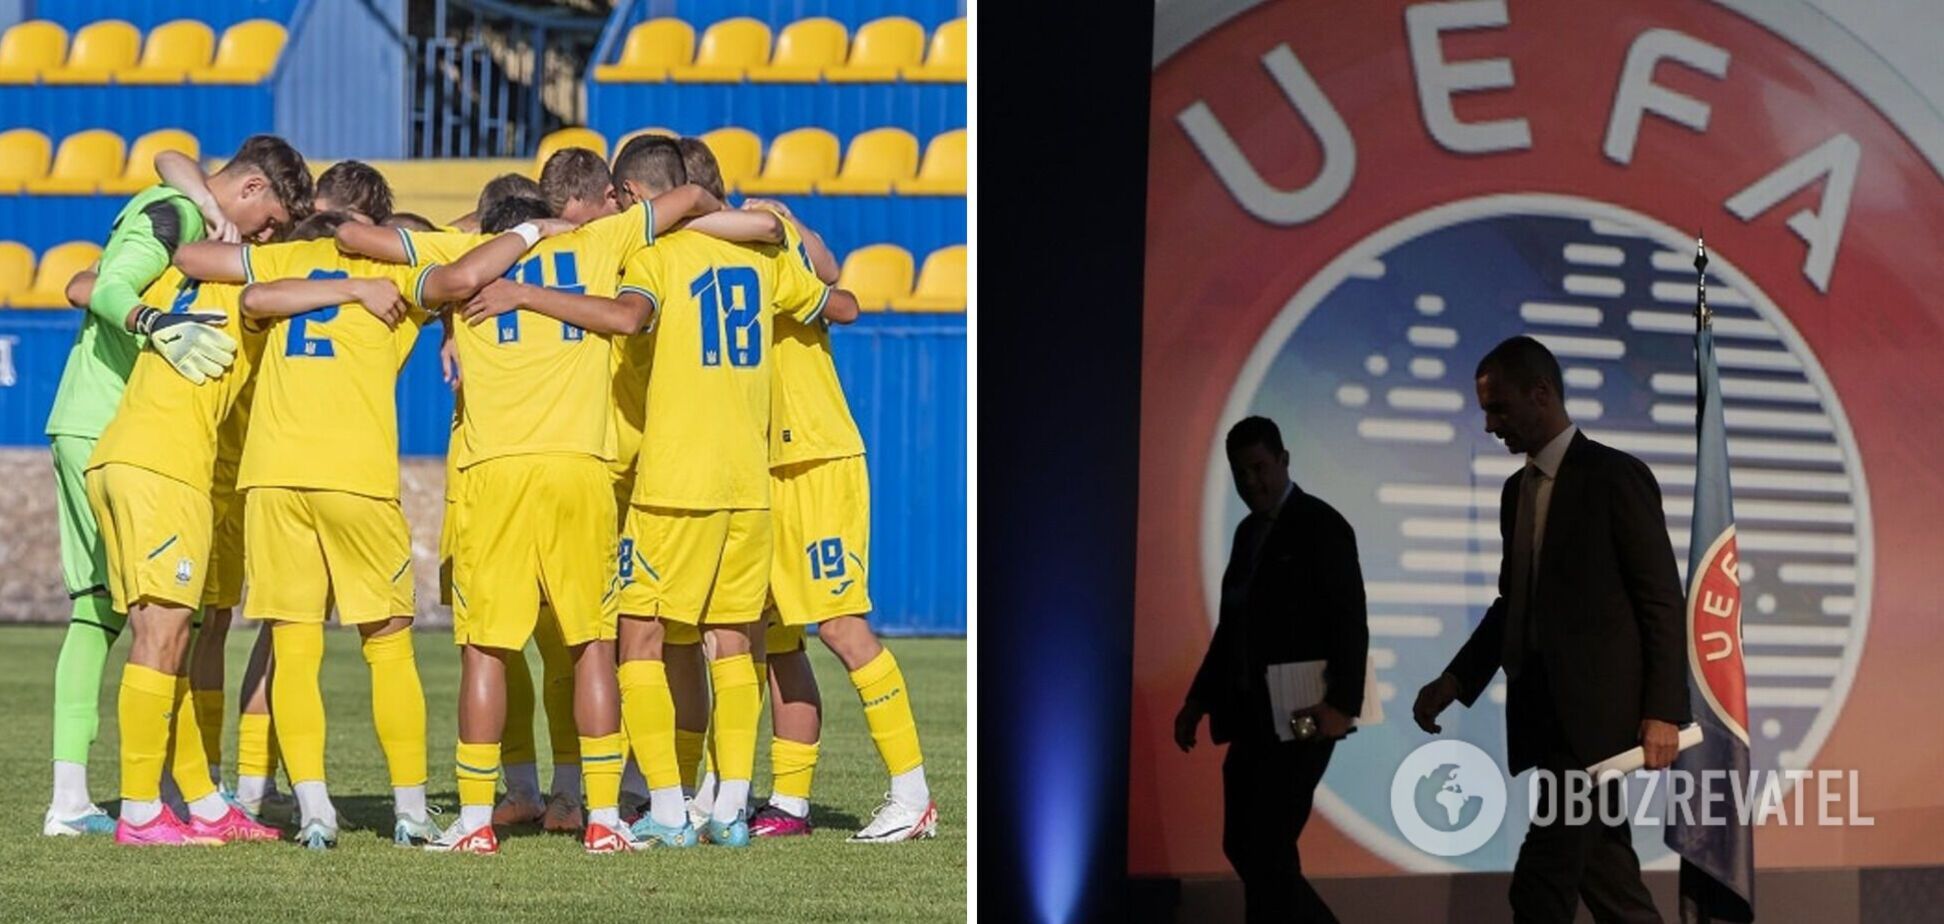 Играть не будем: Украина отреагировала на возвращение России U-17 в турниры УЕФА